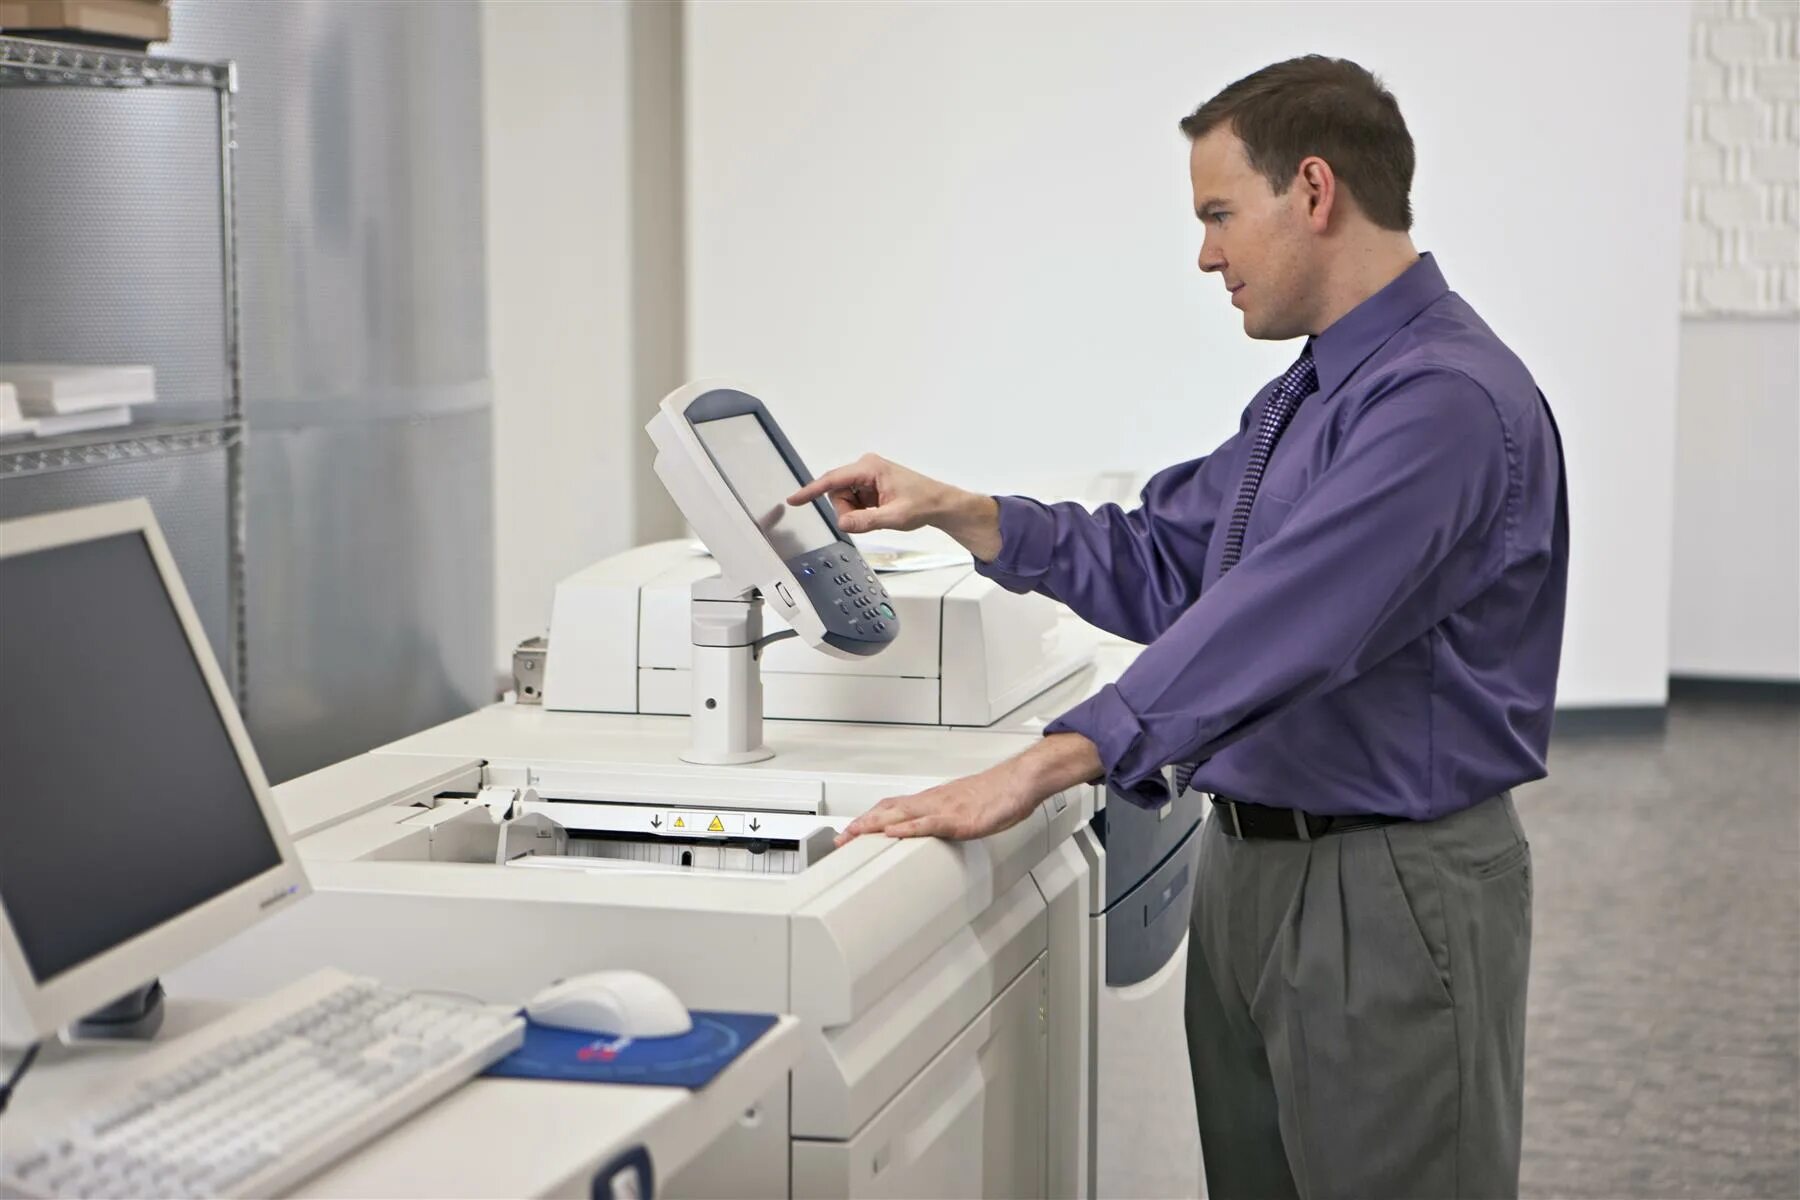 Сканер рахмат. Оргтехника для офиса. Принтер в офисе. Печатная техника. Принтер Xerox в офисе.